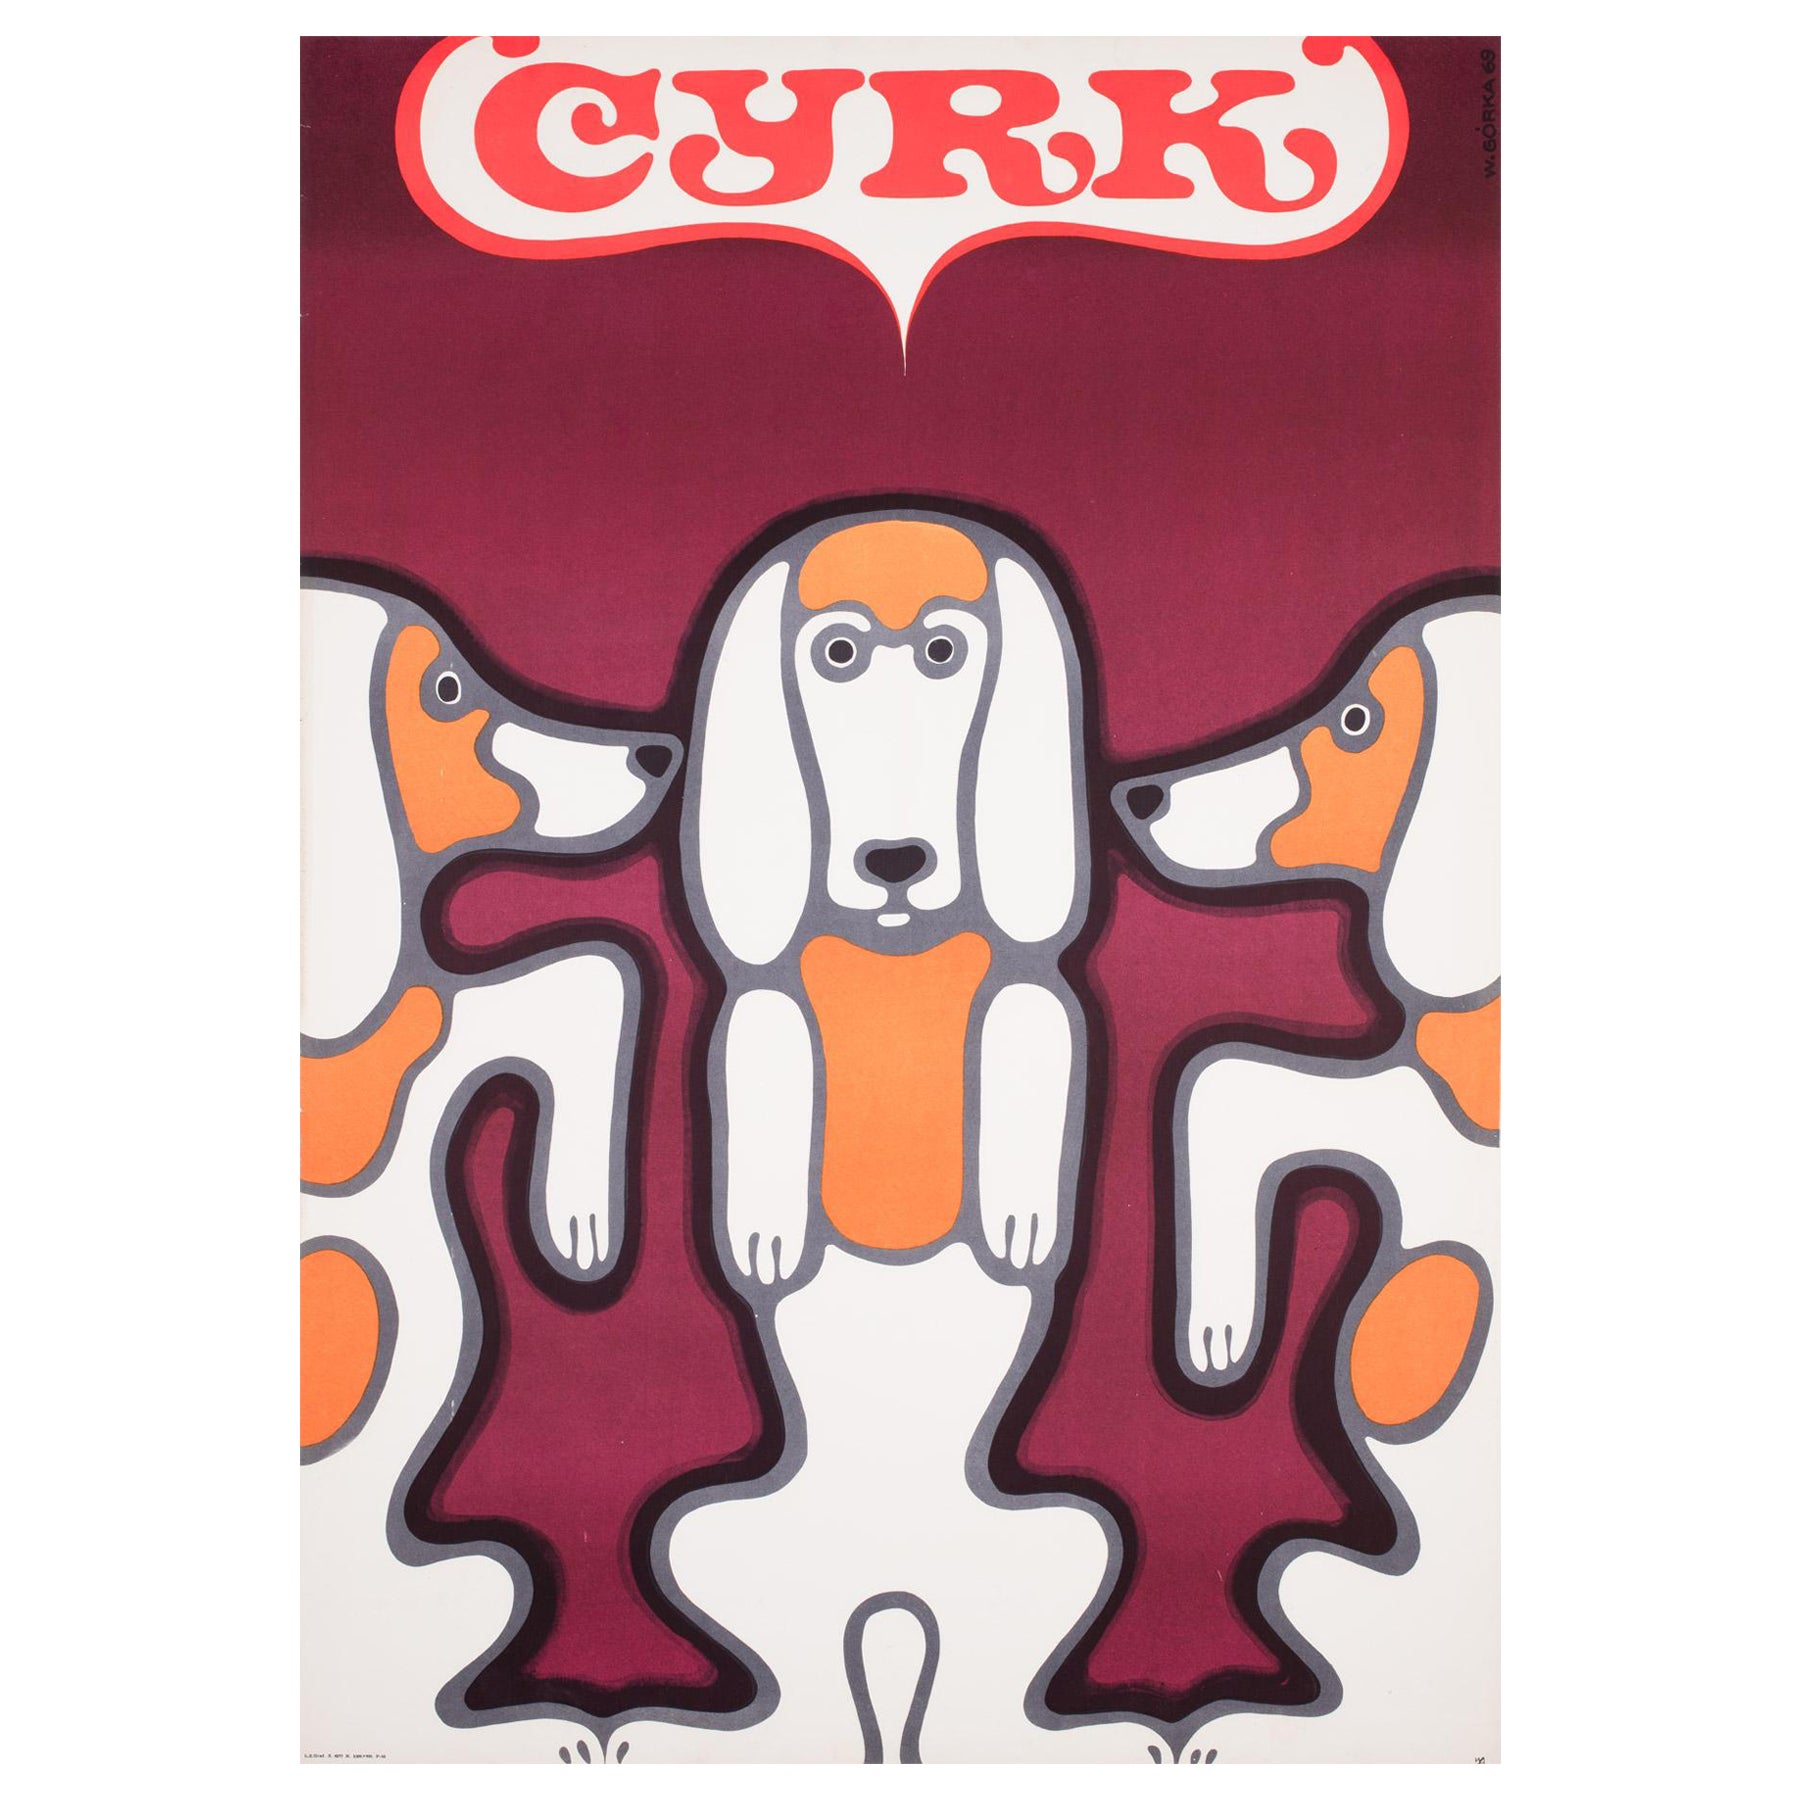 Original 1969 polnisches CYRK 'Zirkus; Poster, Drei Beagles von Gorka